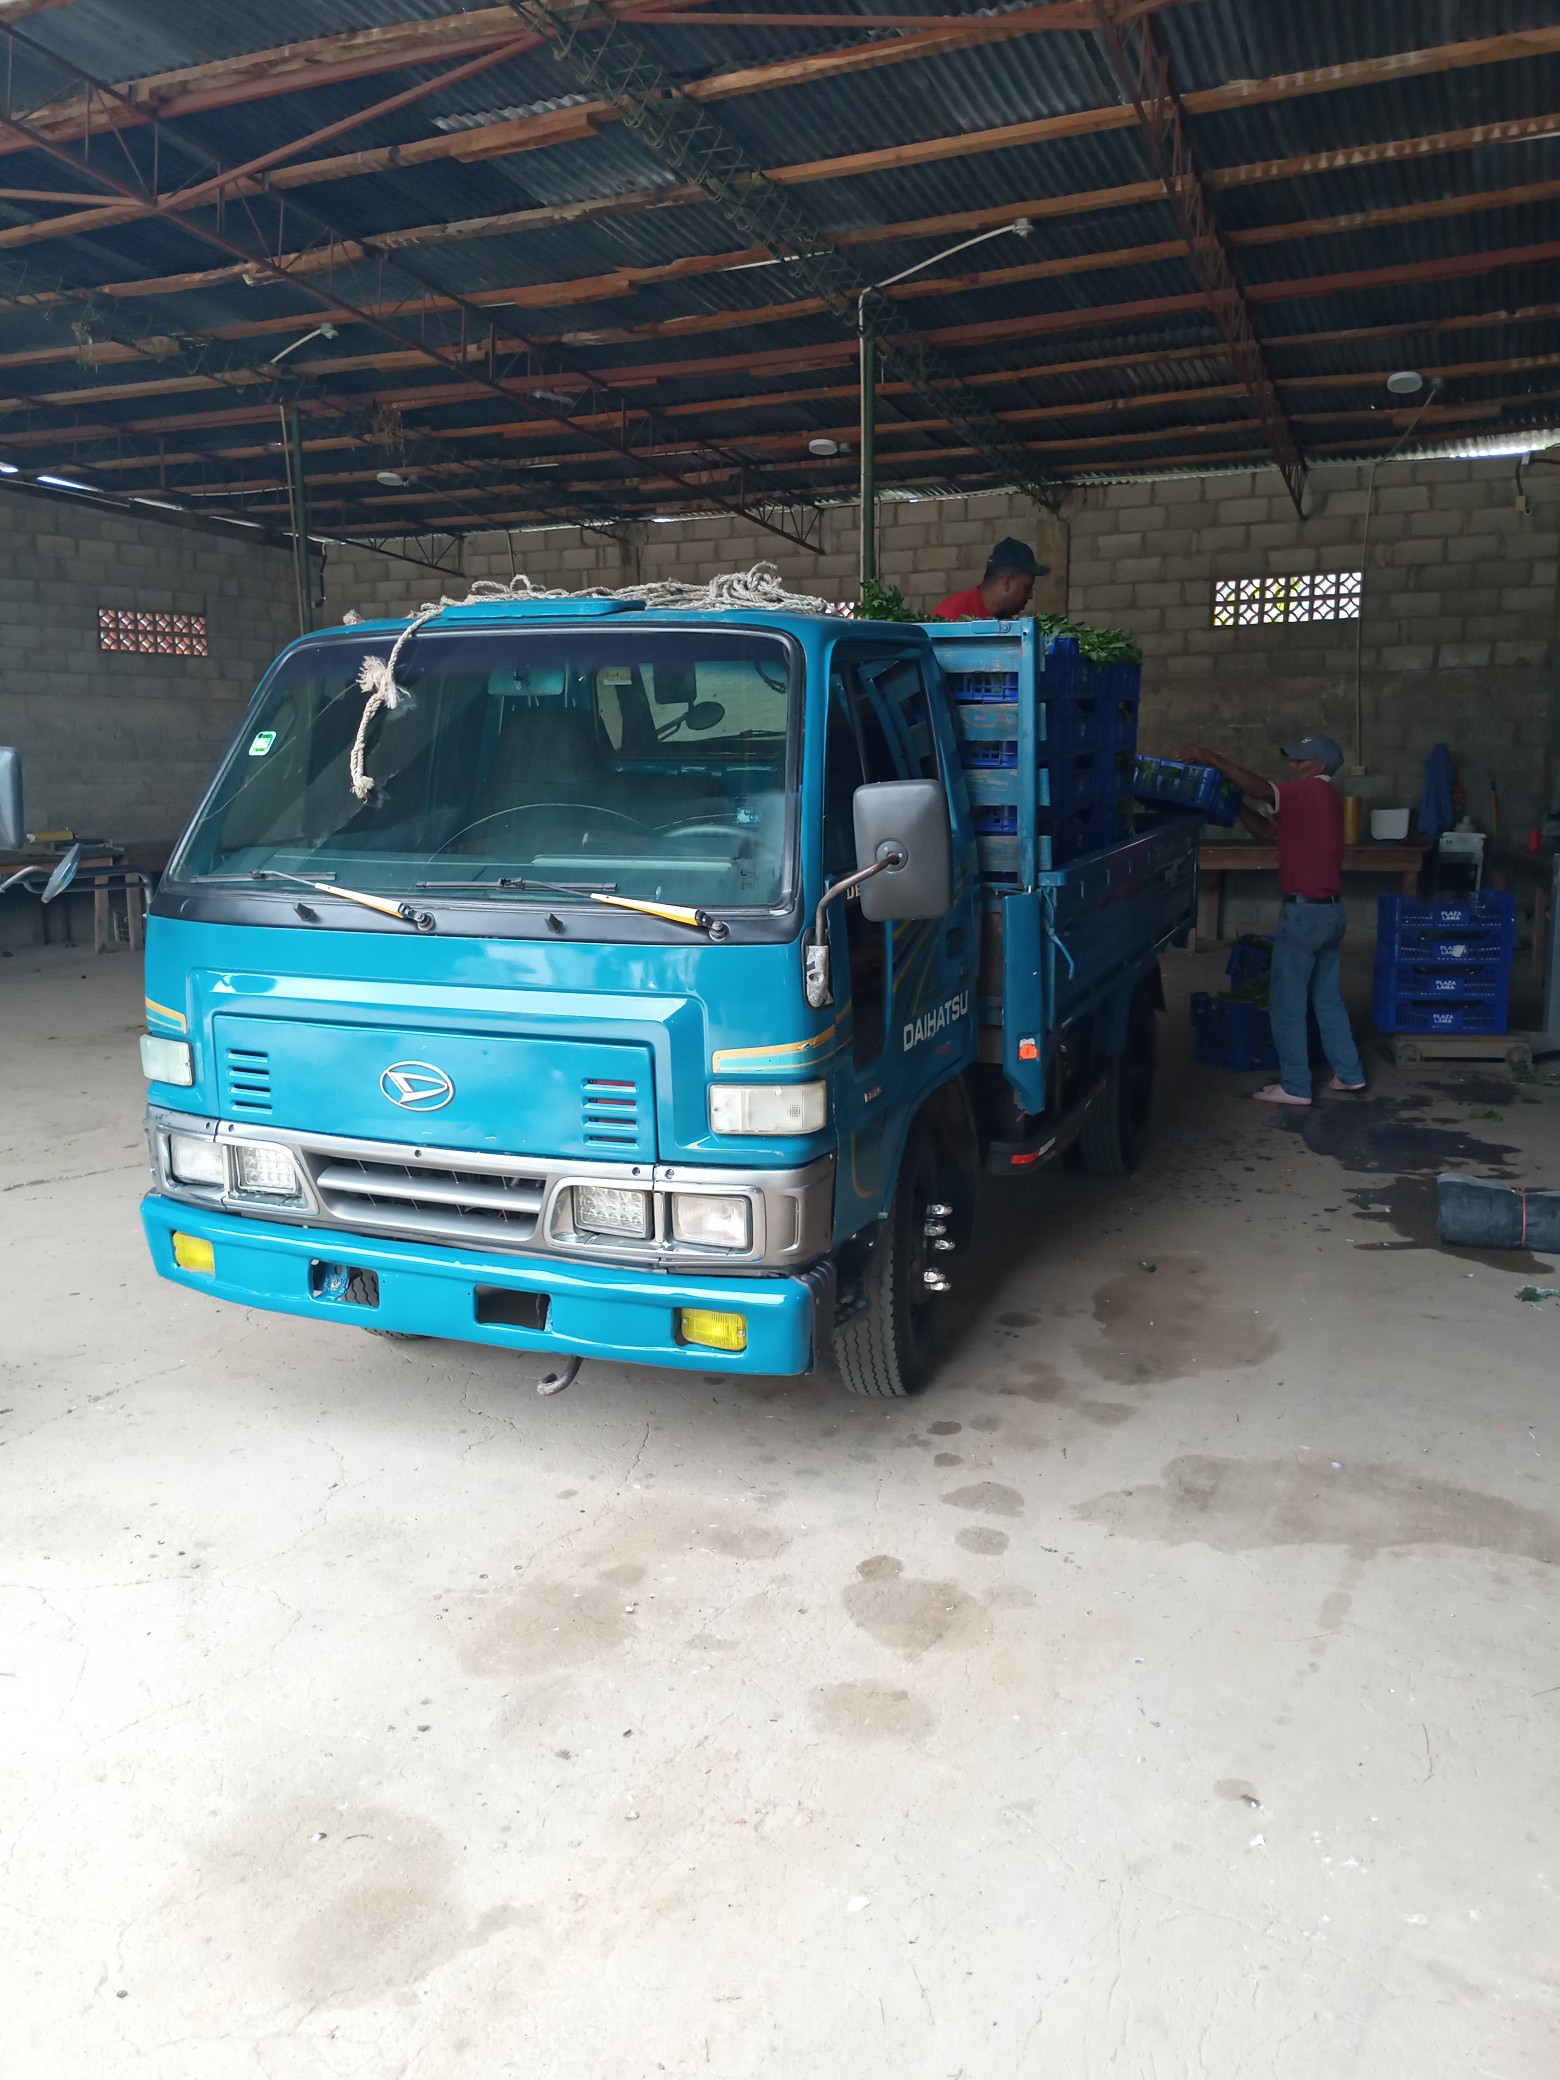 camiones y vehiculos pesados - Camion dahiatzu